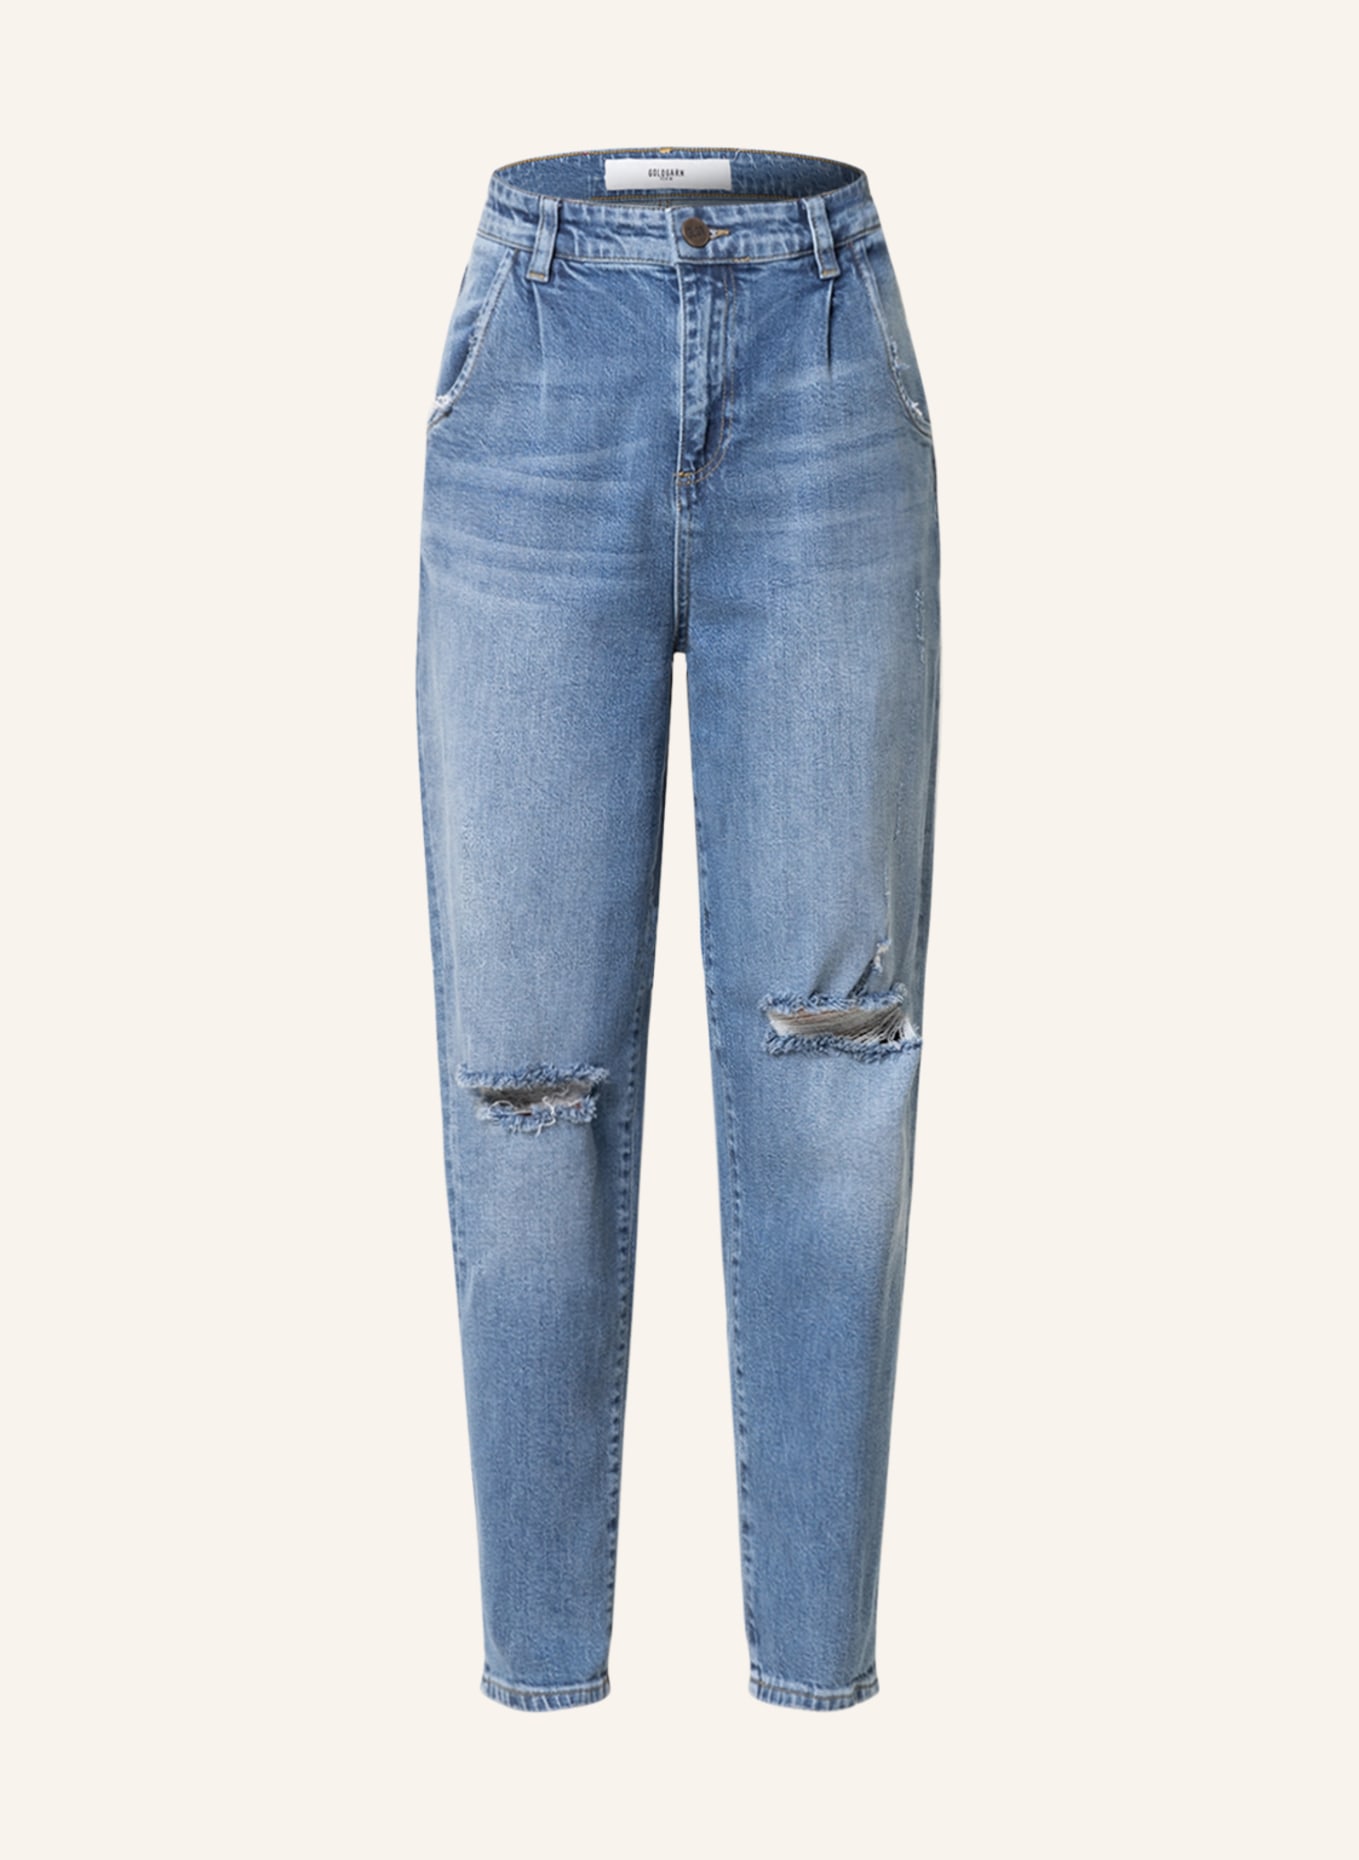 GOLDGARN DENIM Mom jeans OSTSTADT, Color: 1010 vibtageblue (Image 1)